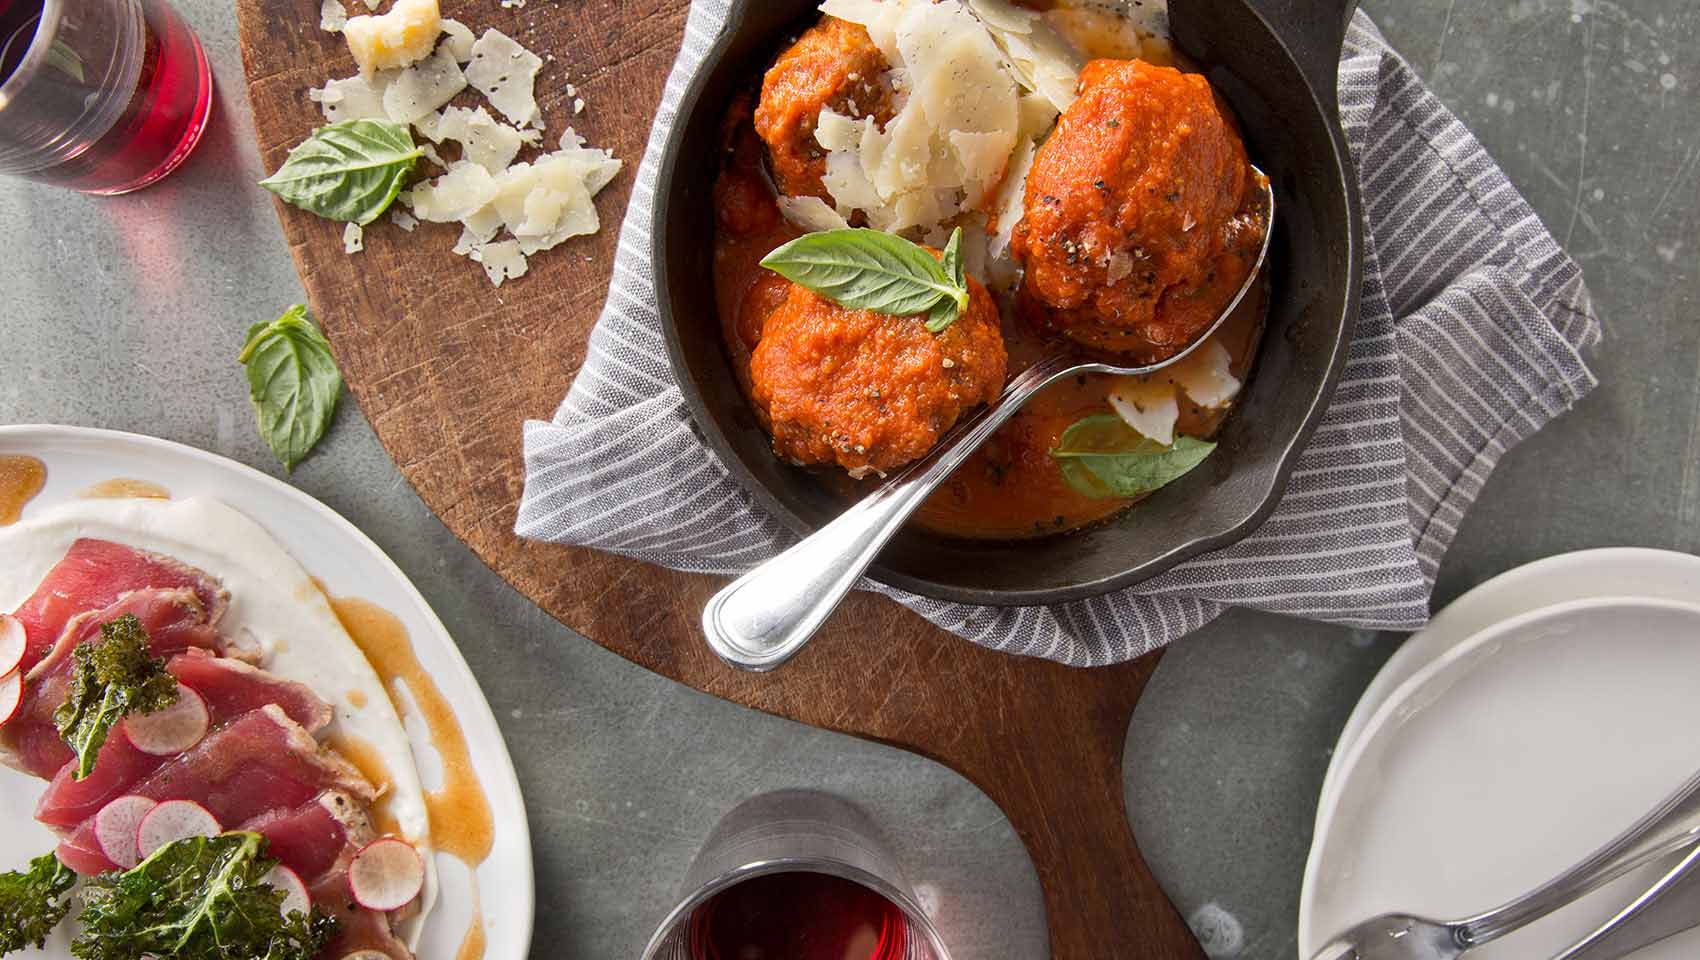 Pacci Italian Kitchen and bar Chicken meatballs and tuna carpaccio